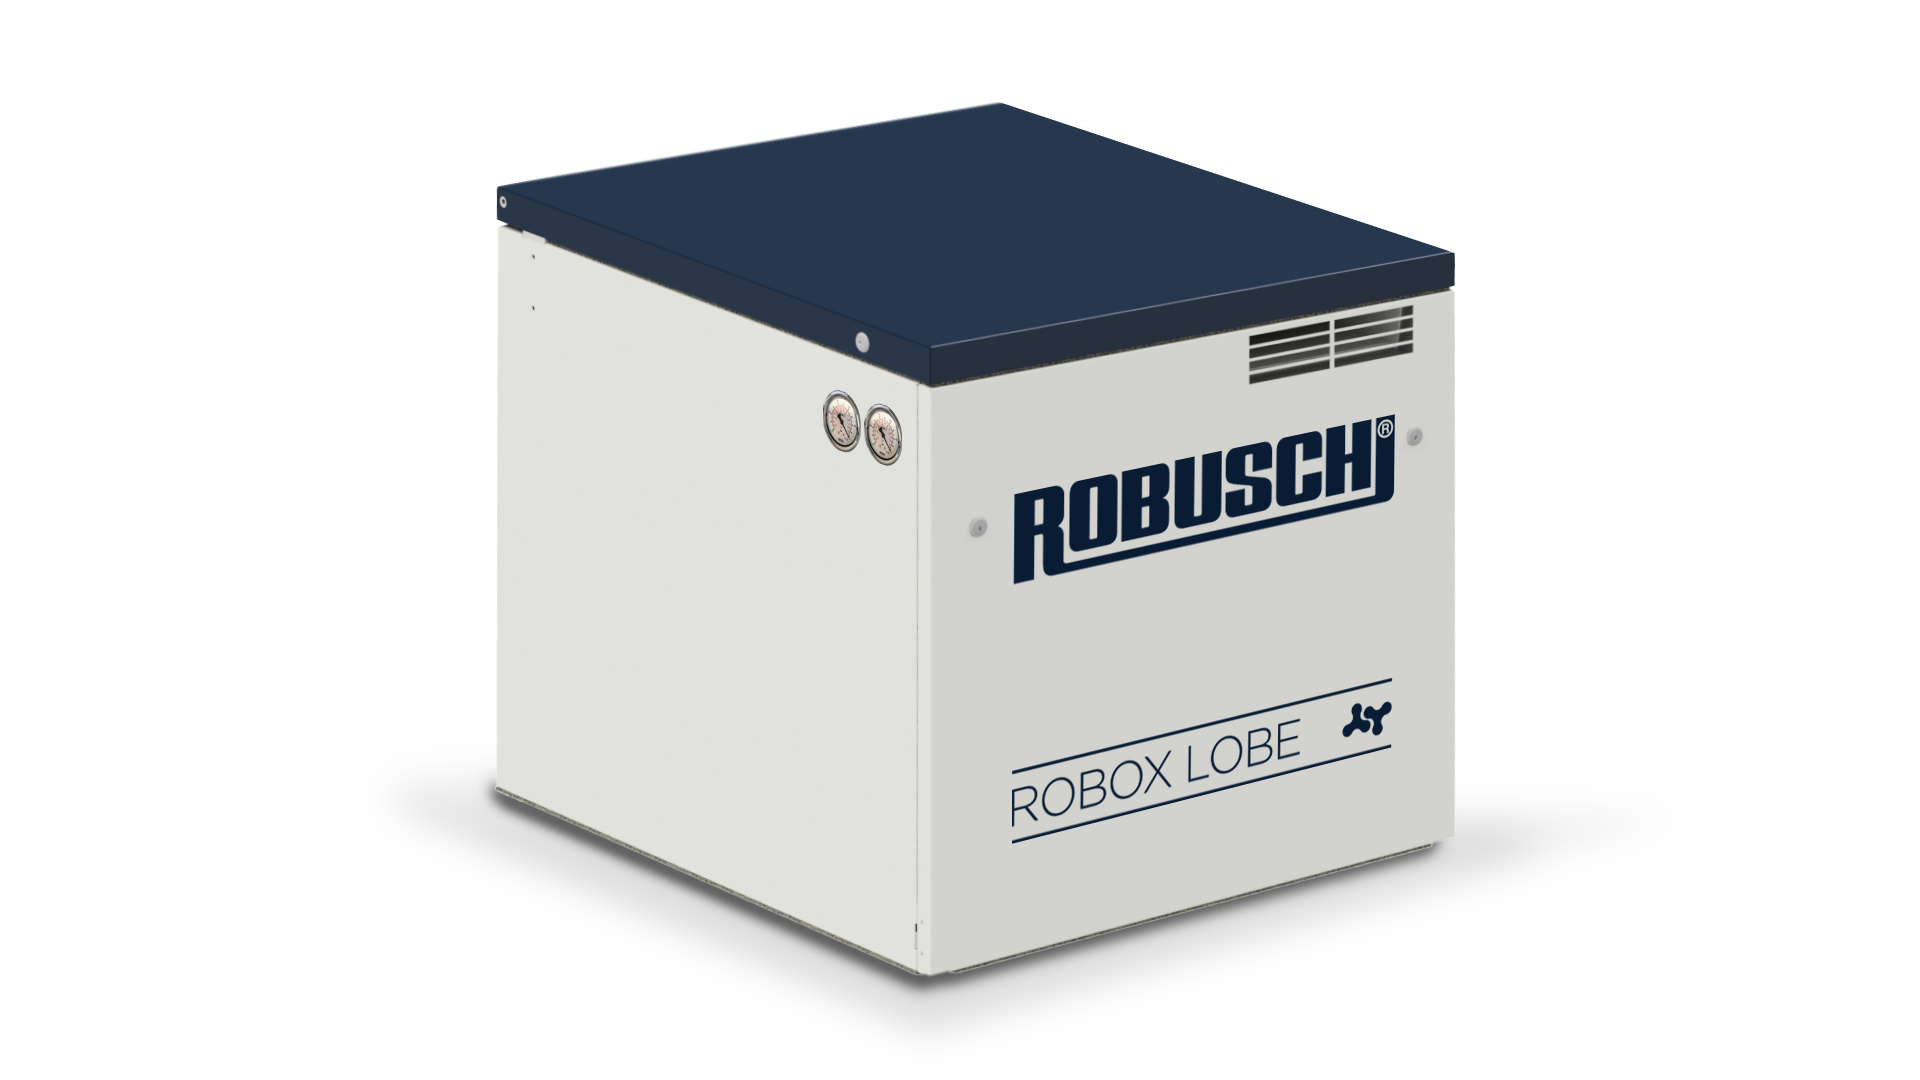 Robox Lobe 1.0 small size